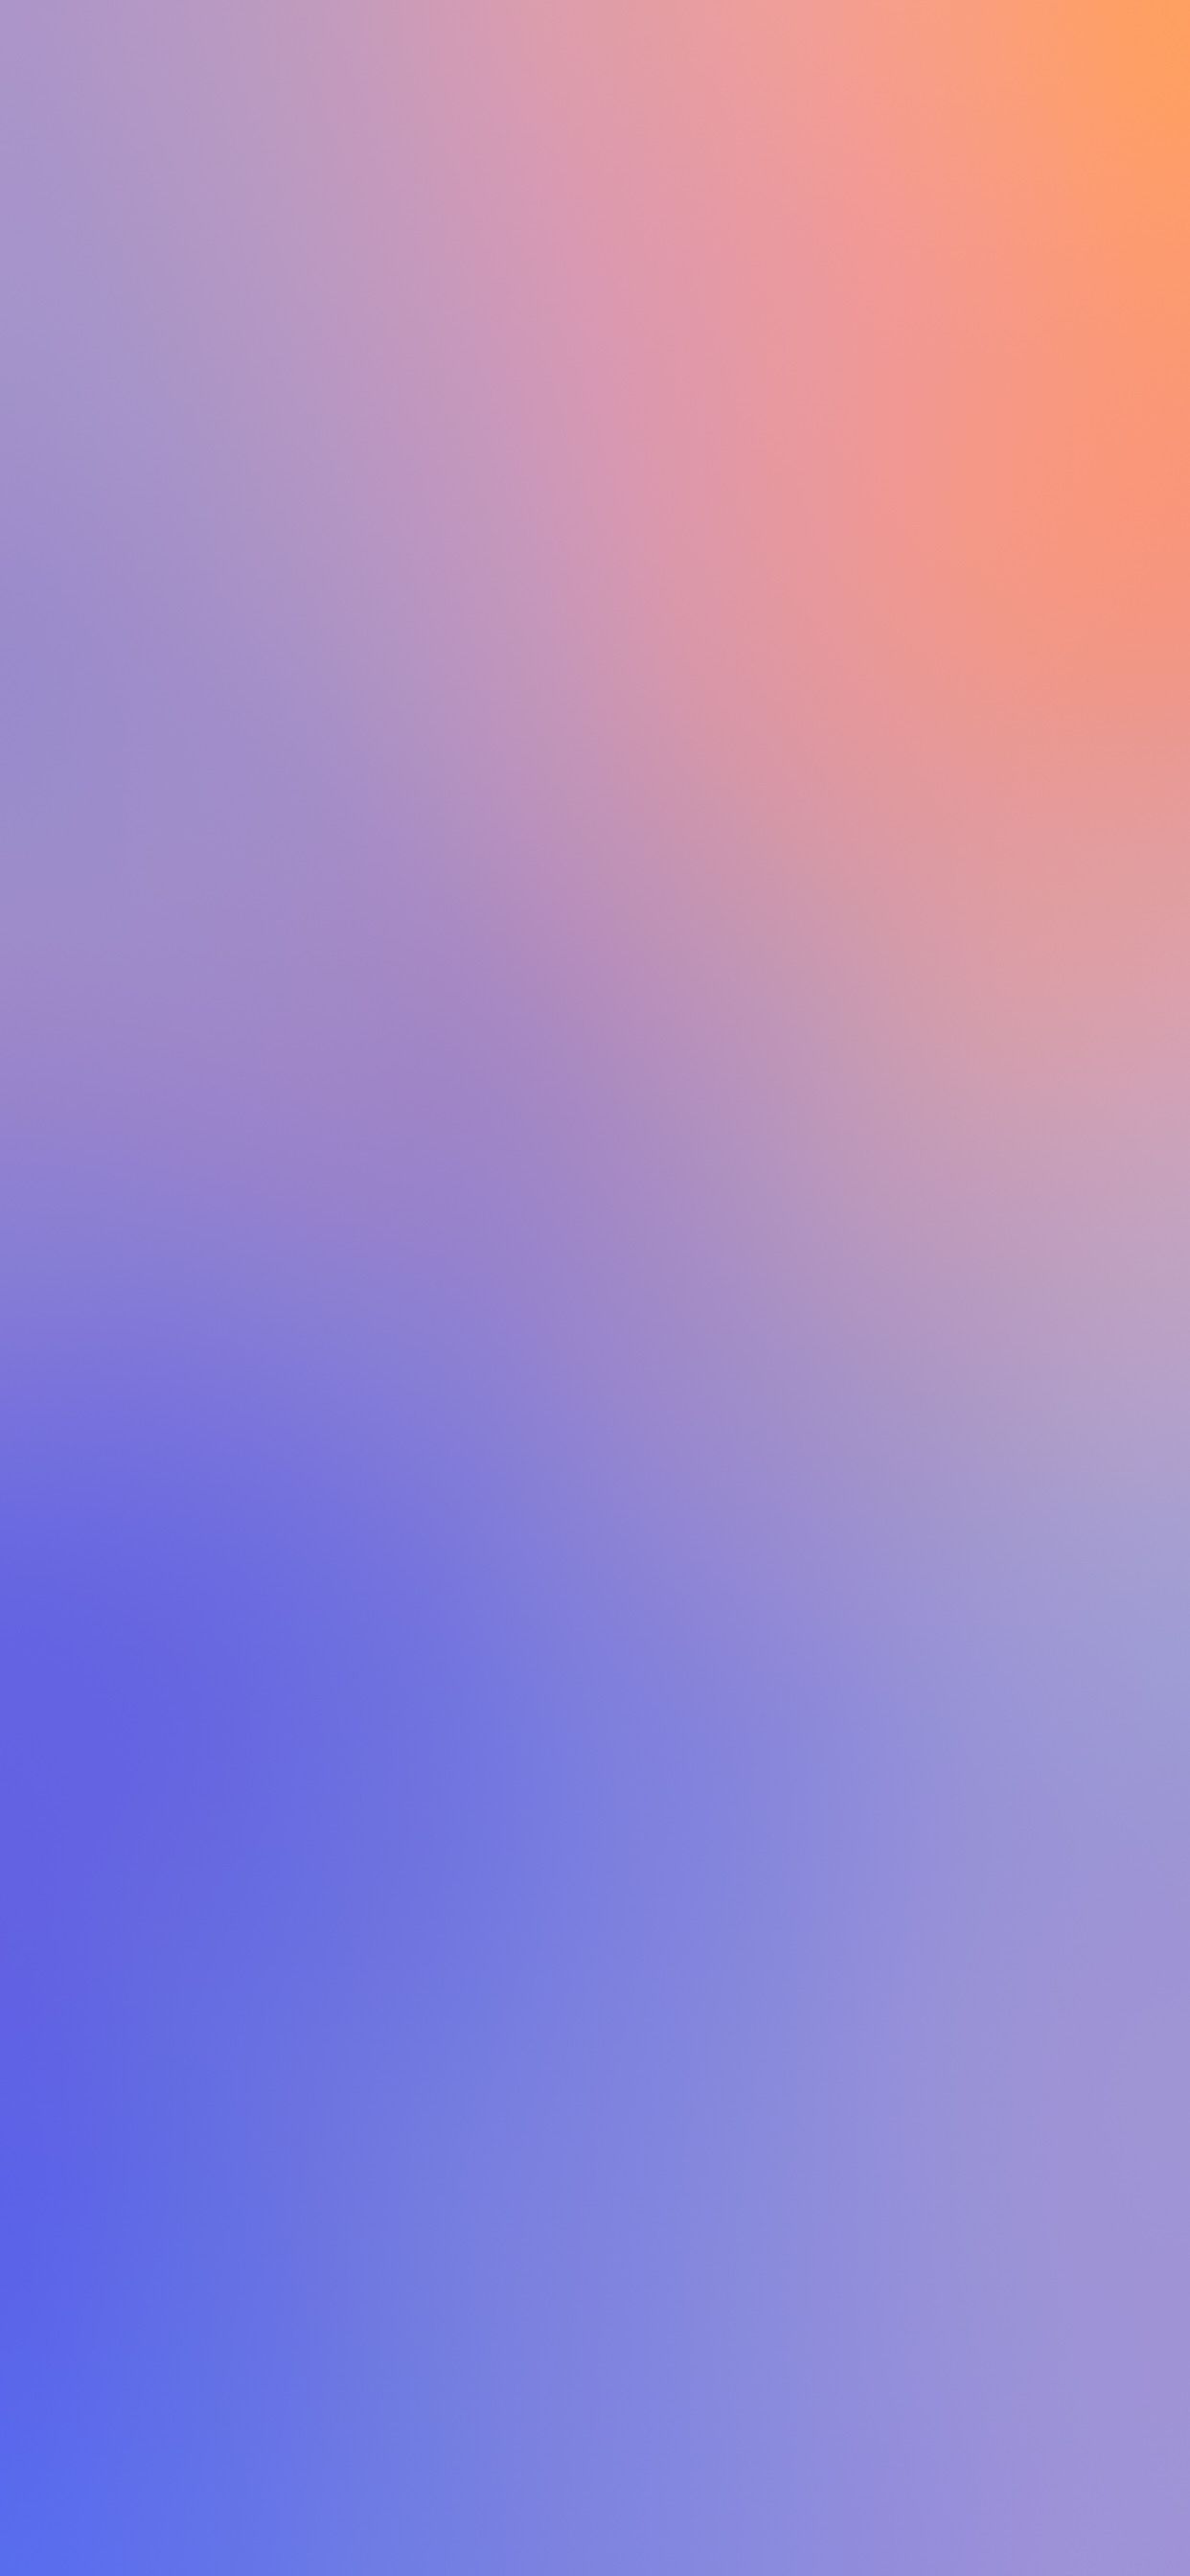 Nếu bạn đang tìm kiếm một bức ảnh nền gradient đầy màu sắc cho điện thoại iPhone của mình, hãy đến với chúng tôi để khám phá bộ sưu tập ảnh nền gradient cho iPhone. Bạn sẽ không thể cưỡng lại được vẻ đẹp tuyệt vời của chúng.